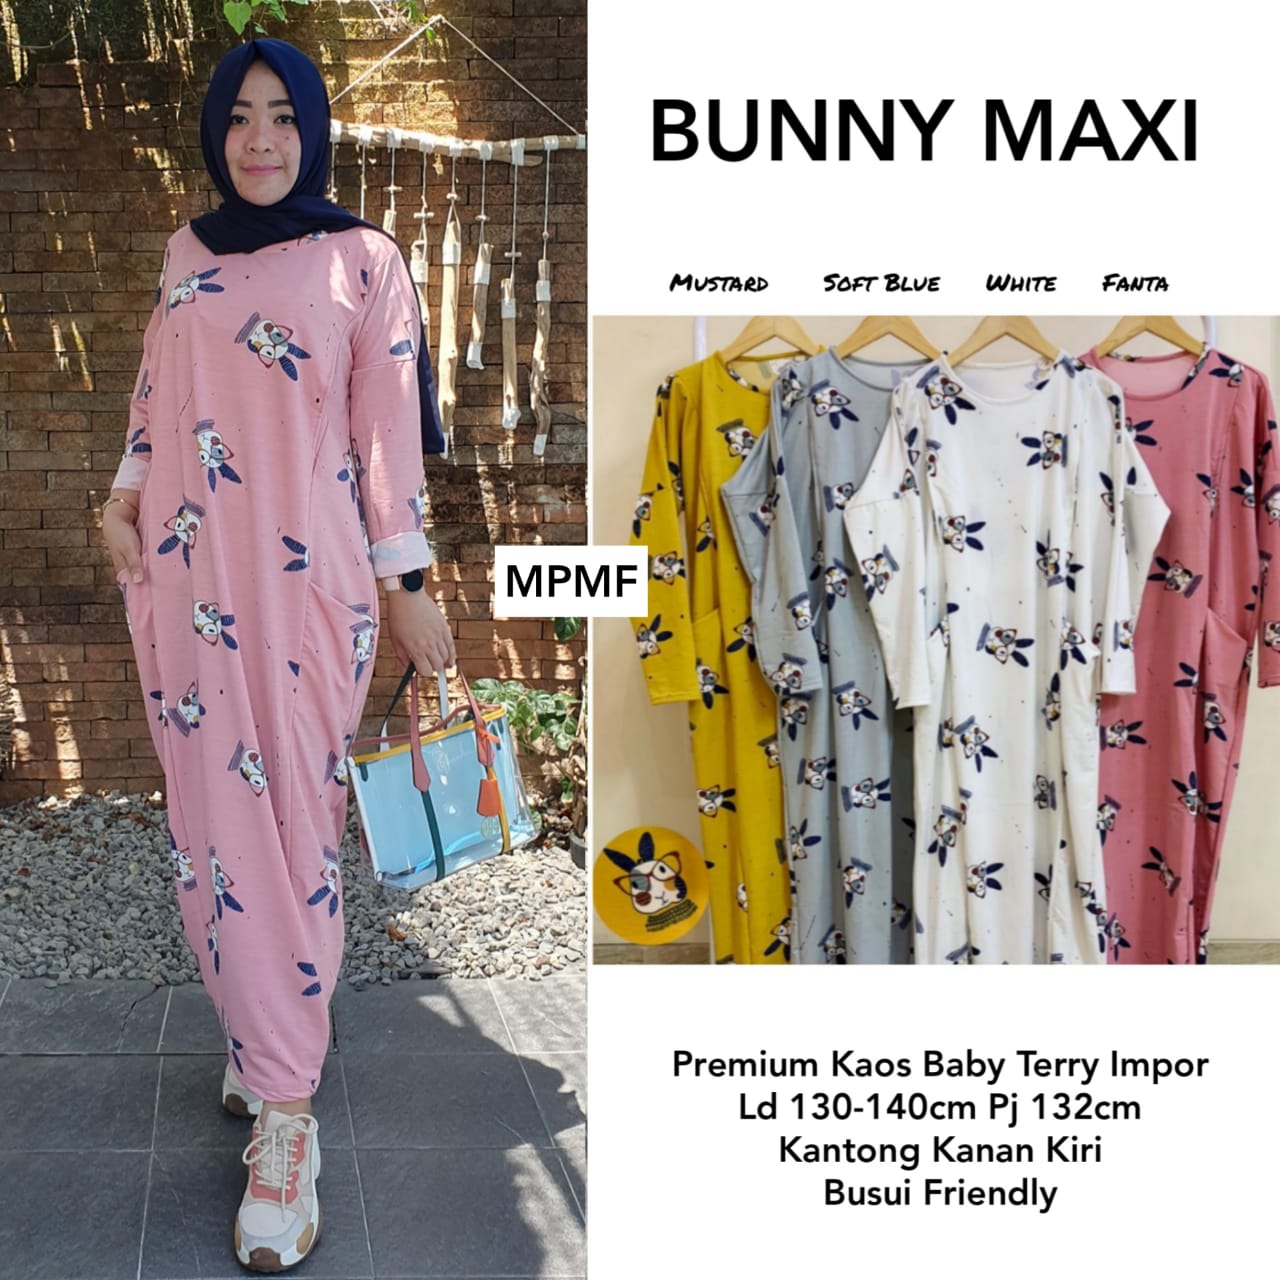 Bunny Maxy Kaos Babyterry Import Hijab Syari Terbaru 2019 Fashion Hijab Untuk Orang Gemuk Dan Pendek Baju 90an Wanita Hijab Model Baju Gamis Terbaru